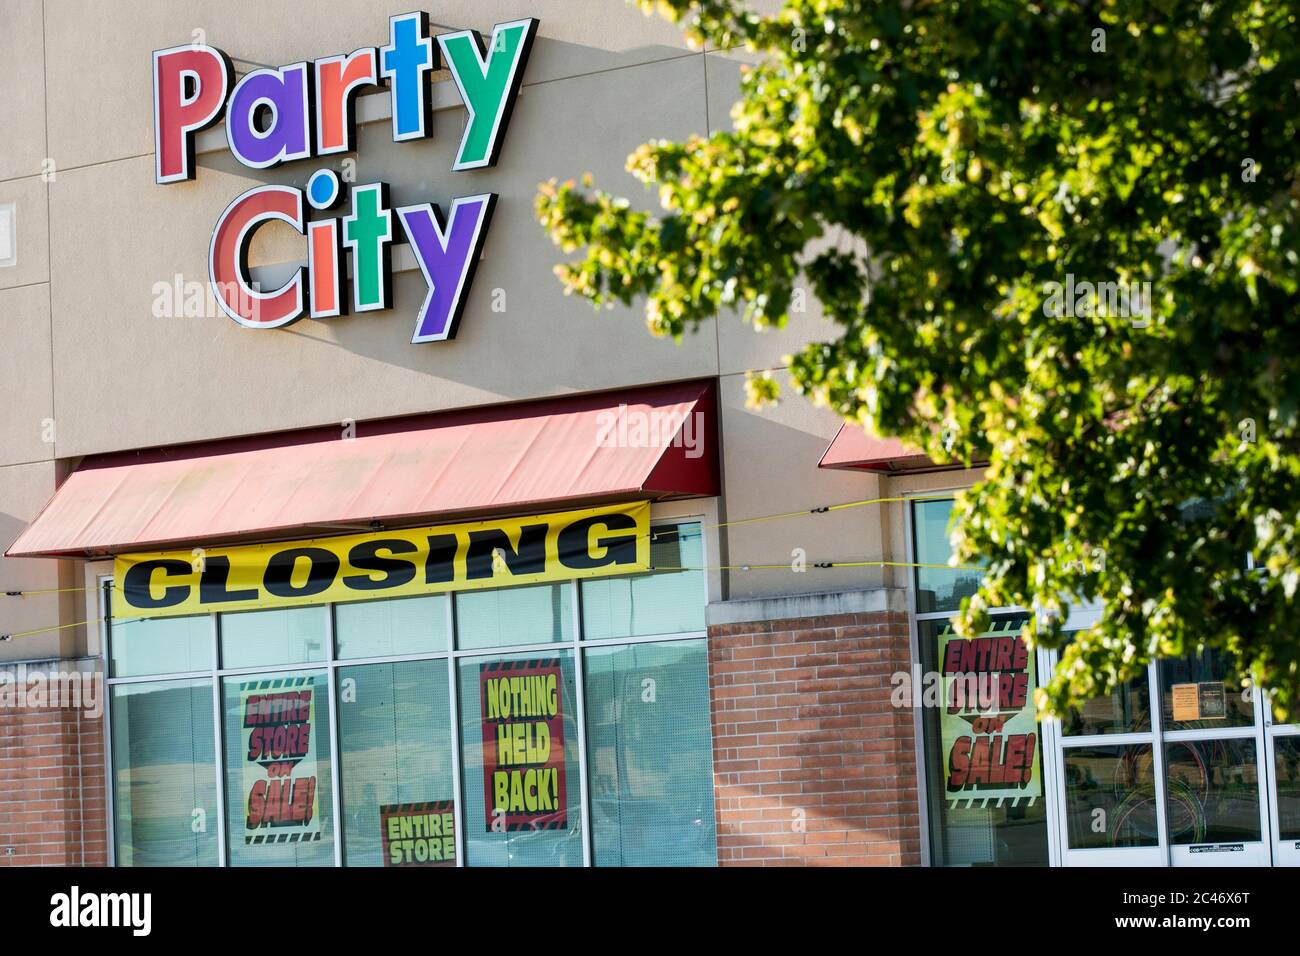 Señalización "Score Closing" fuera de una tienda de venta al por menor de Party City en Hanover, Pensilvania el 12 de junio de 2020. Foto de stock